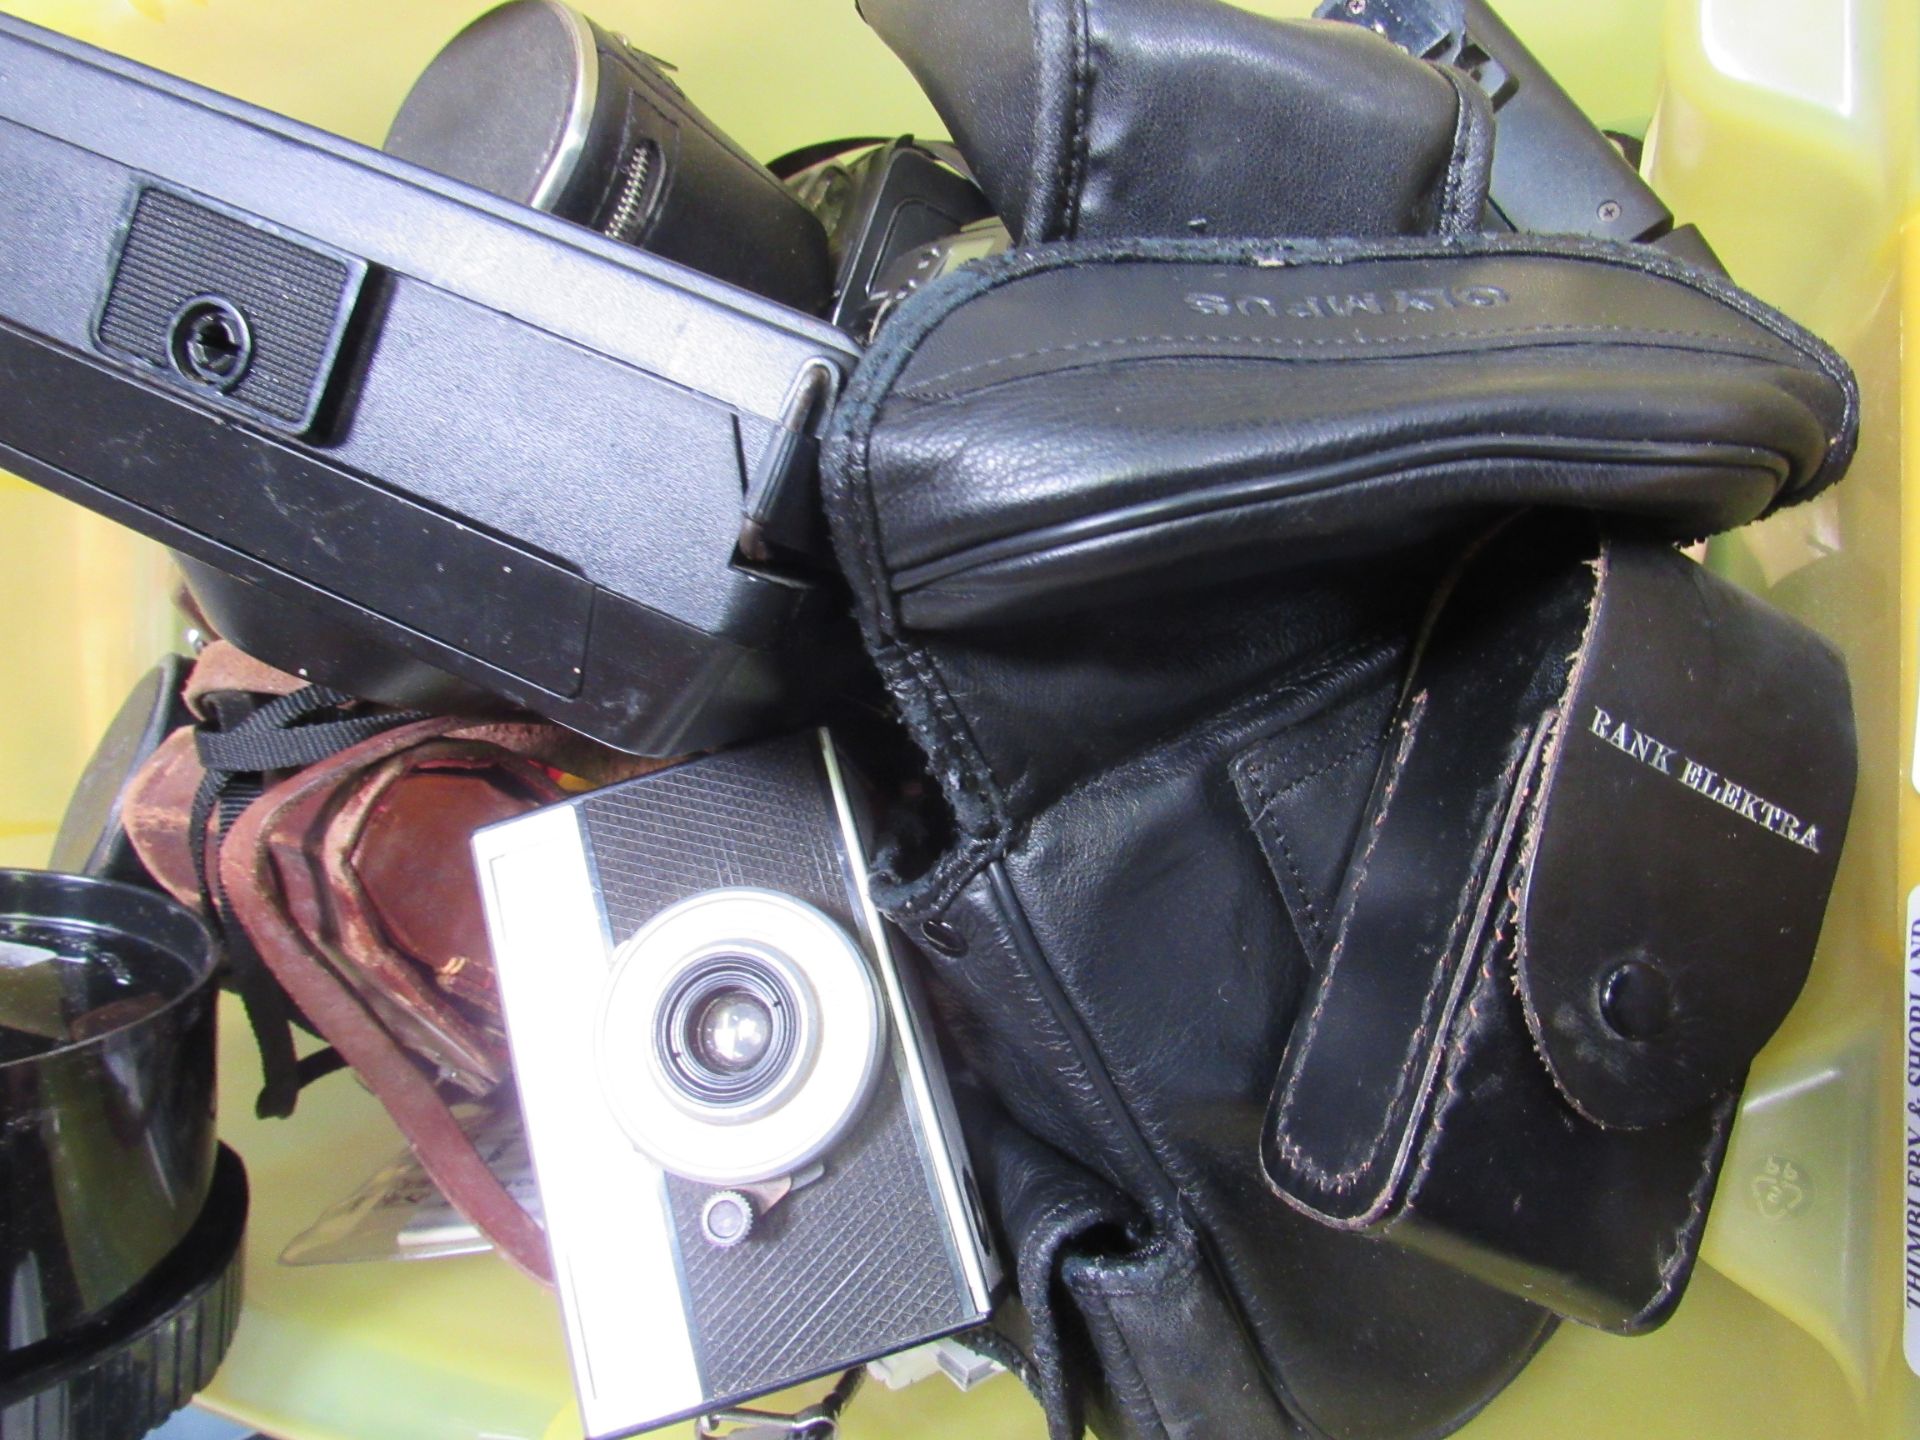 Box containing compact cameras, accessories, lenses, etc. Estimate £10-20. - Image 2 of 2